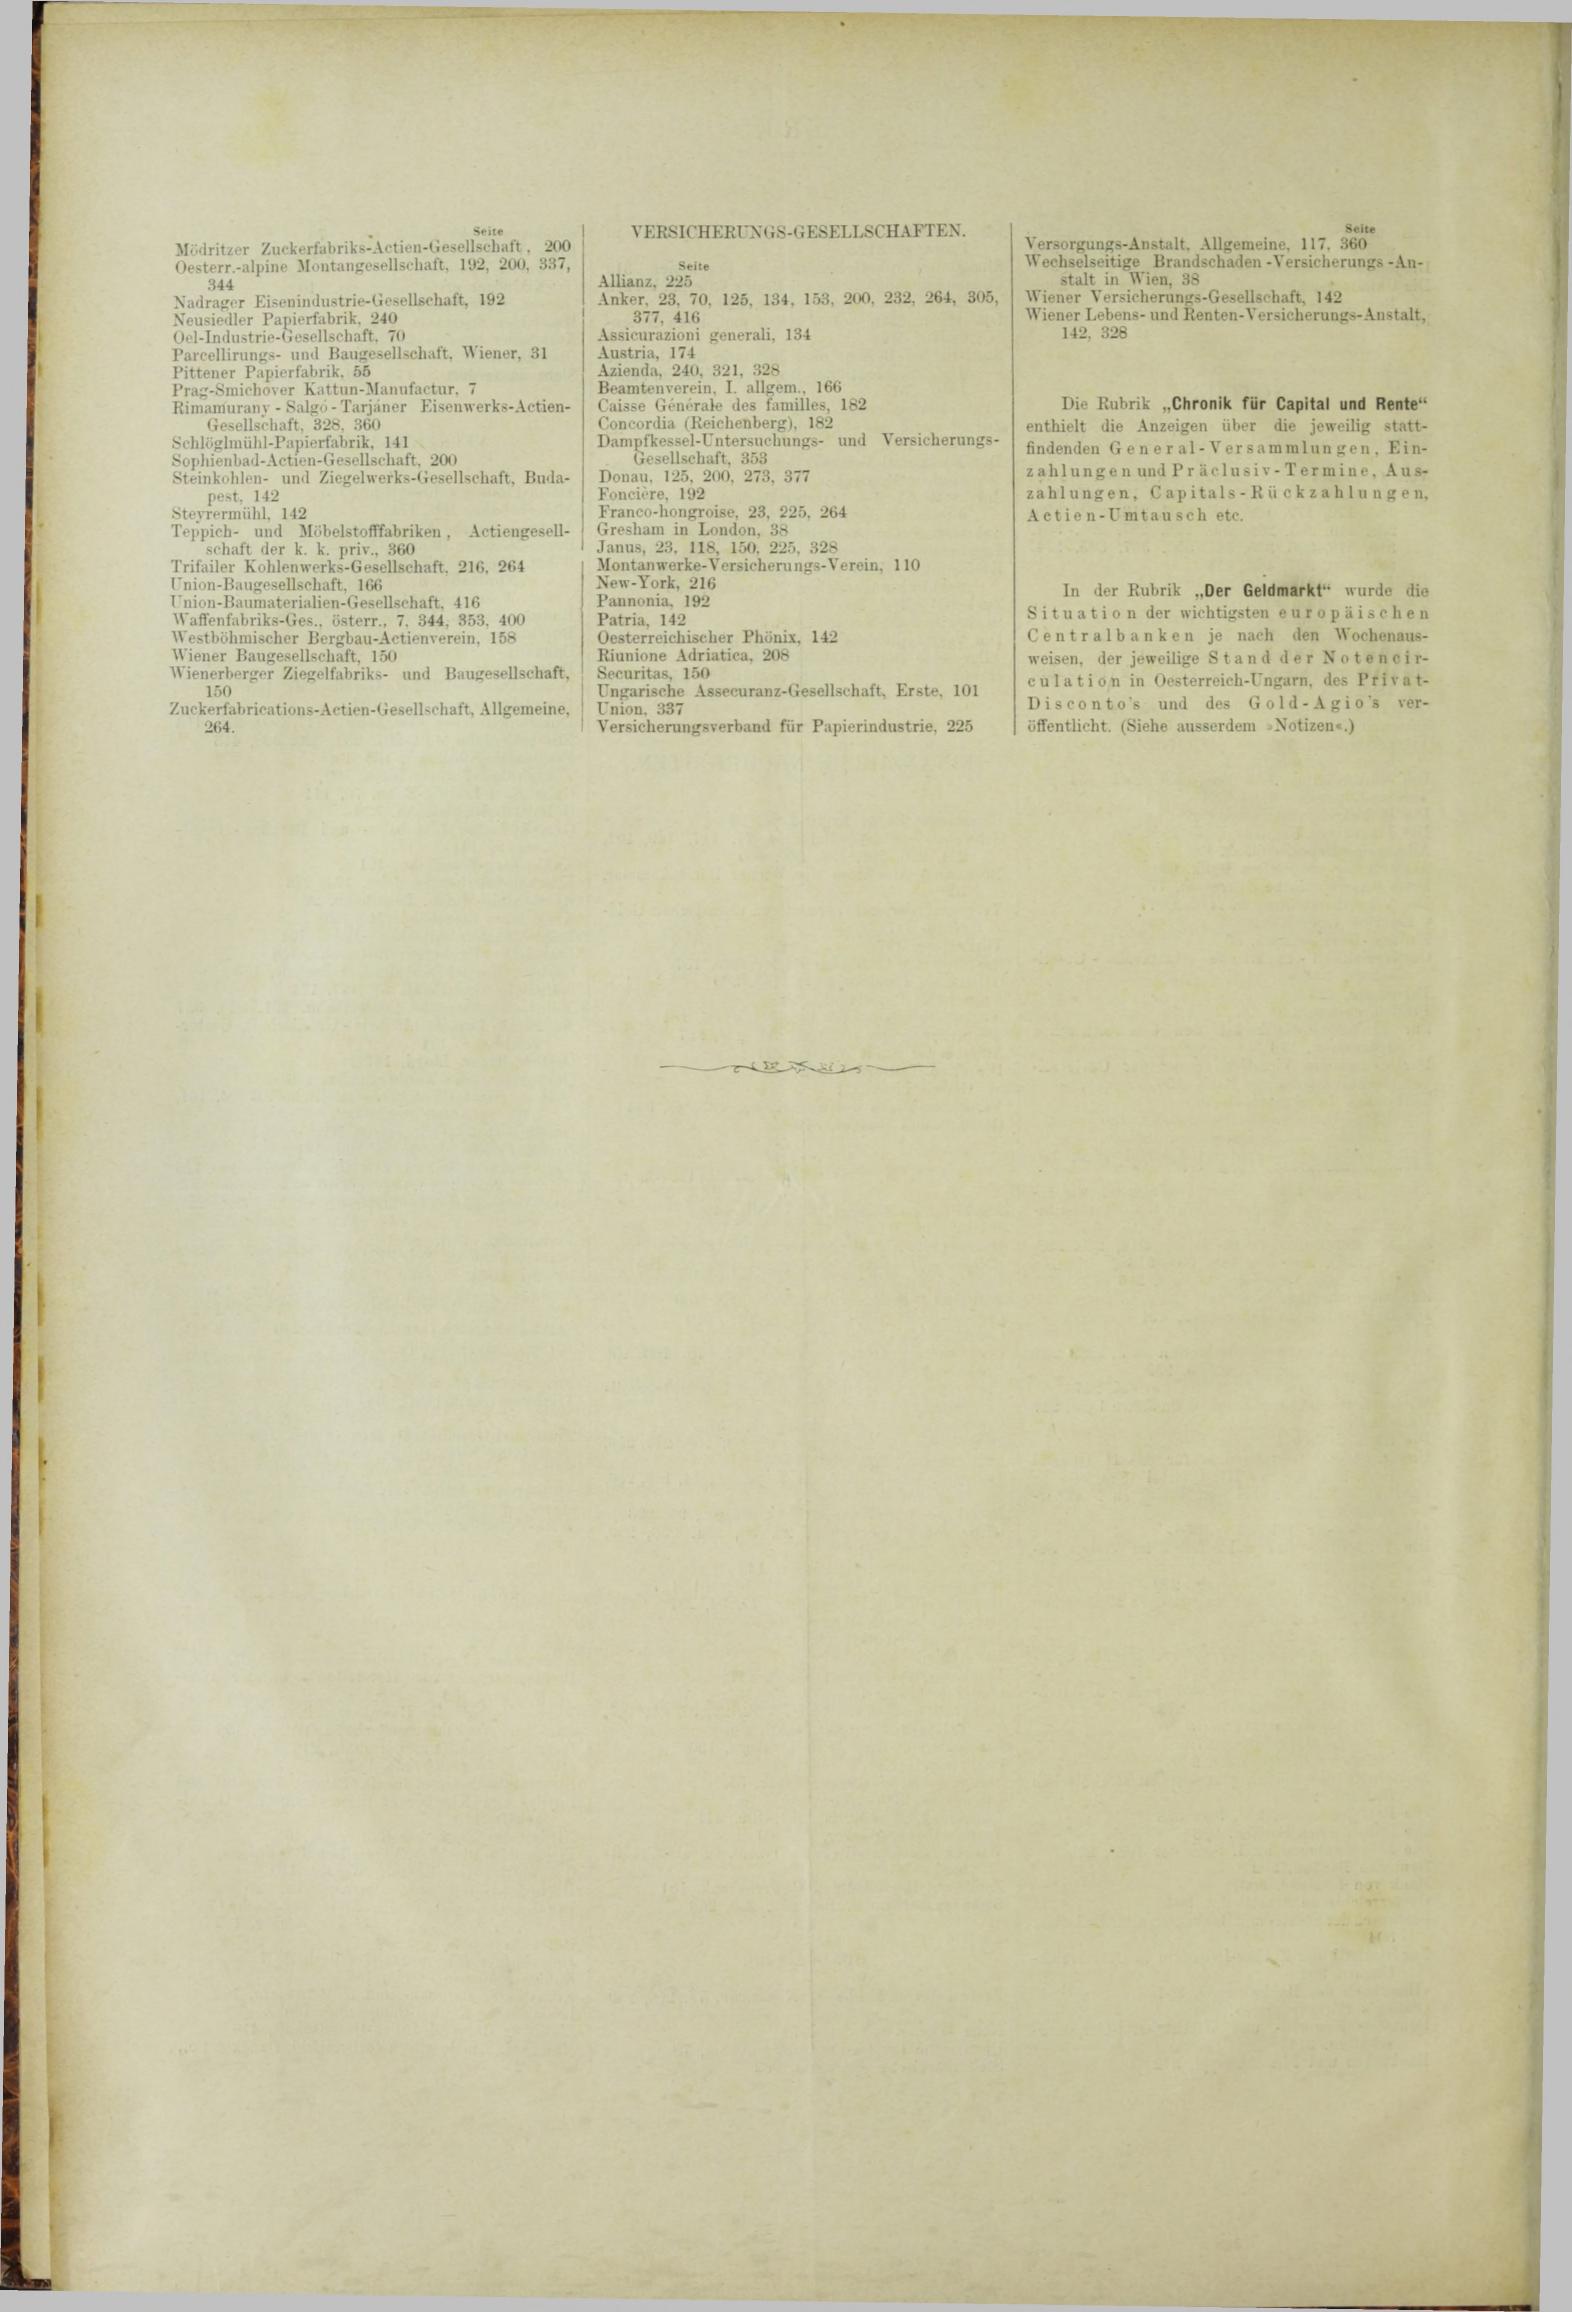 Der Tresor 02.08.1883 - Seite 12